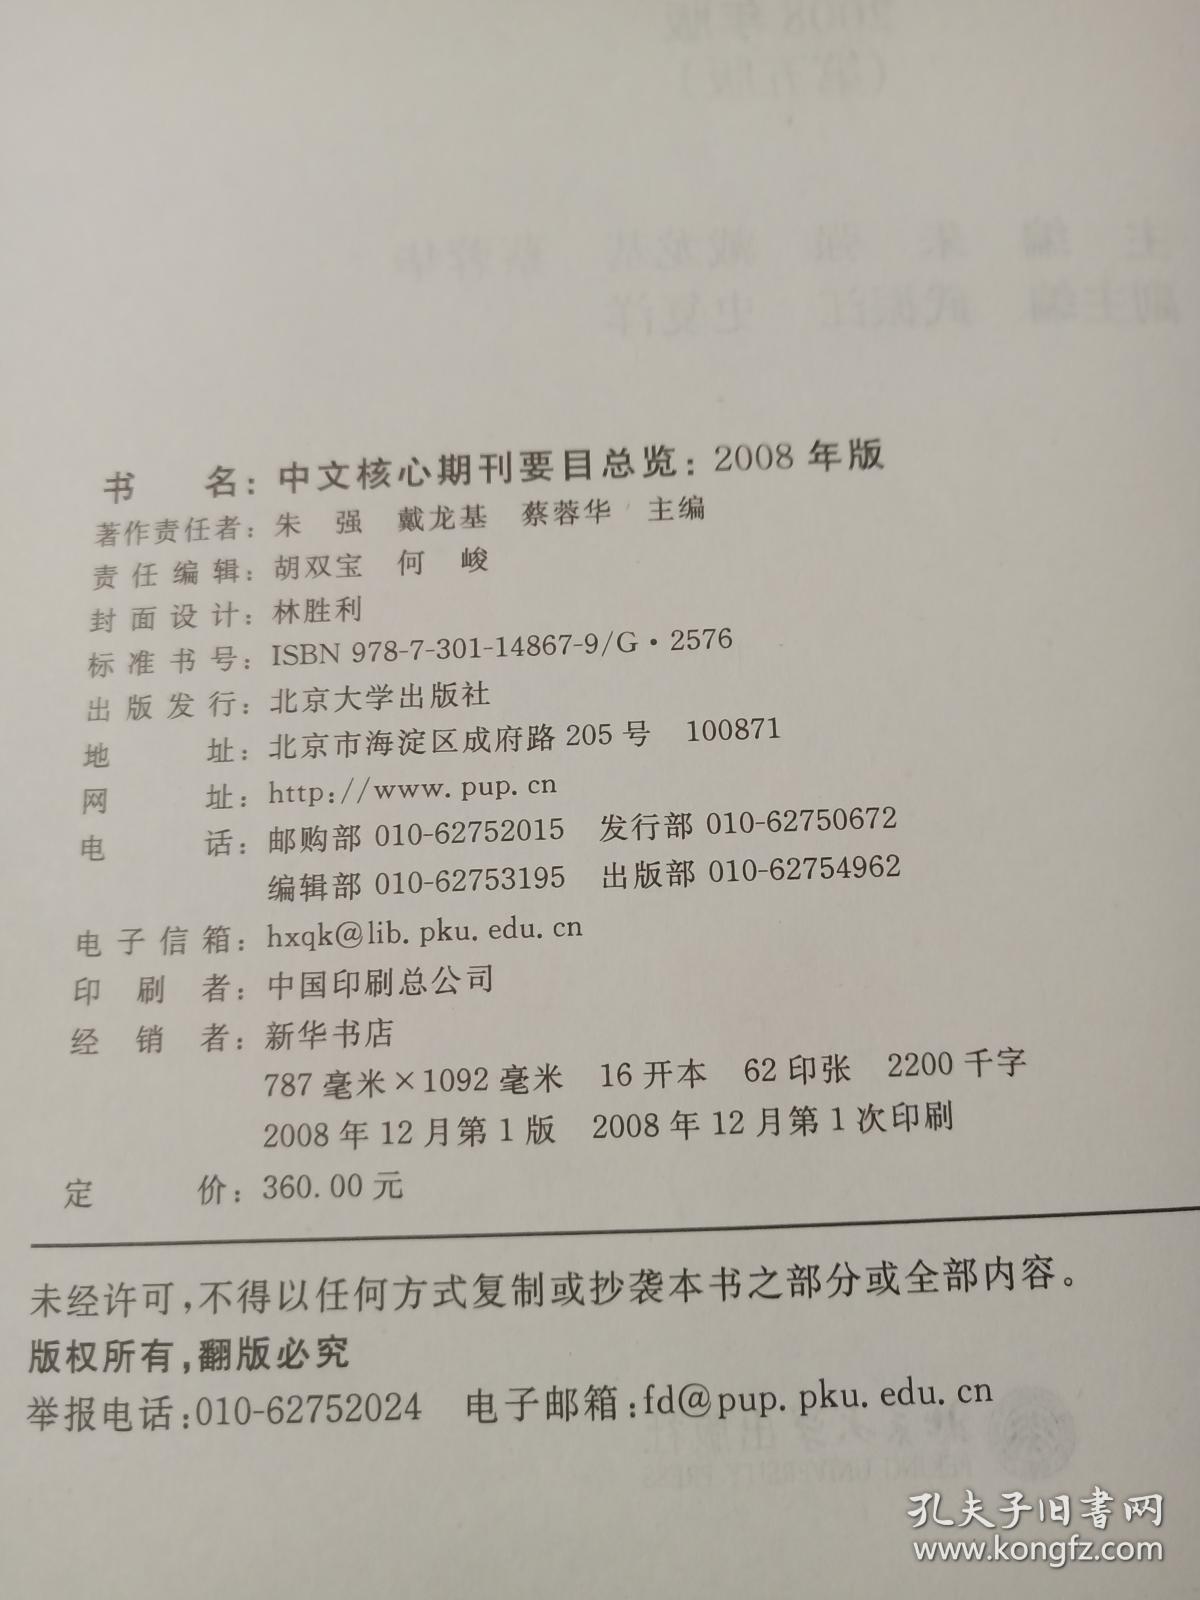 中文核心期刊要目总览2008年版